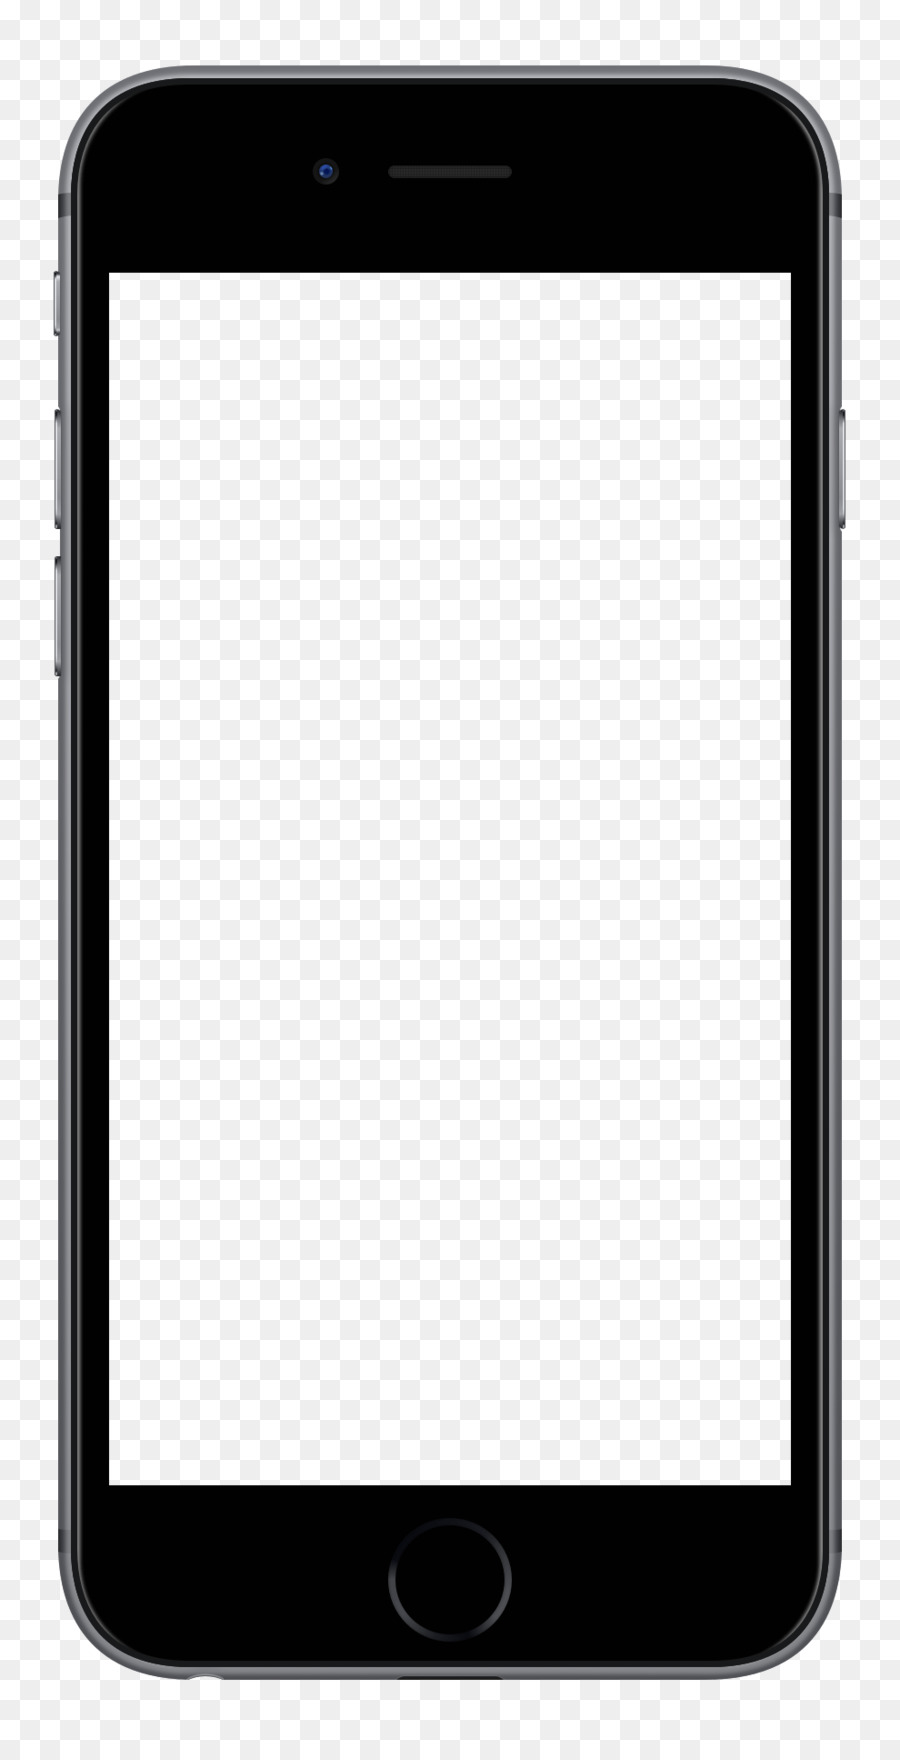 iPhone 5s iPhone 4S iPhone 7 - App per dispositivi mobili